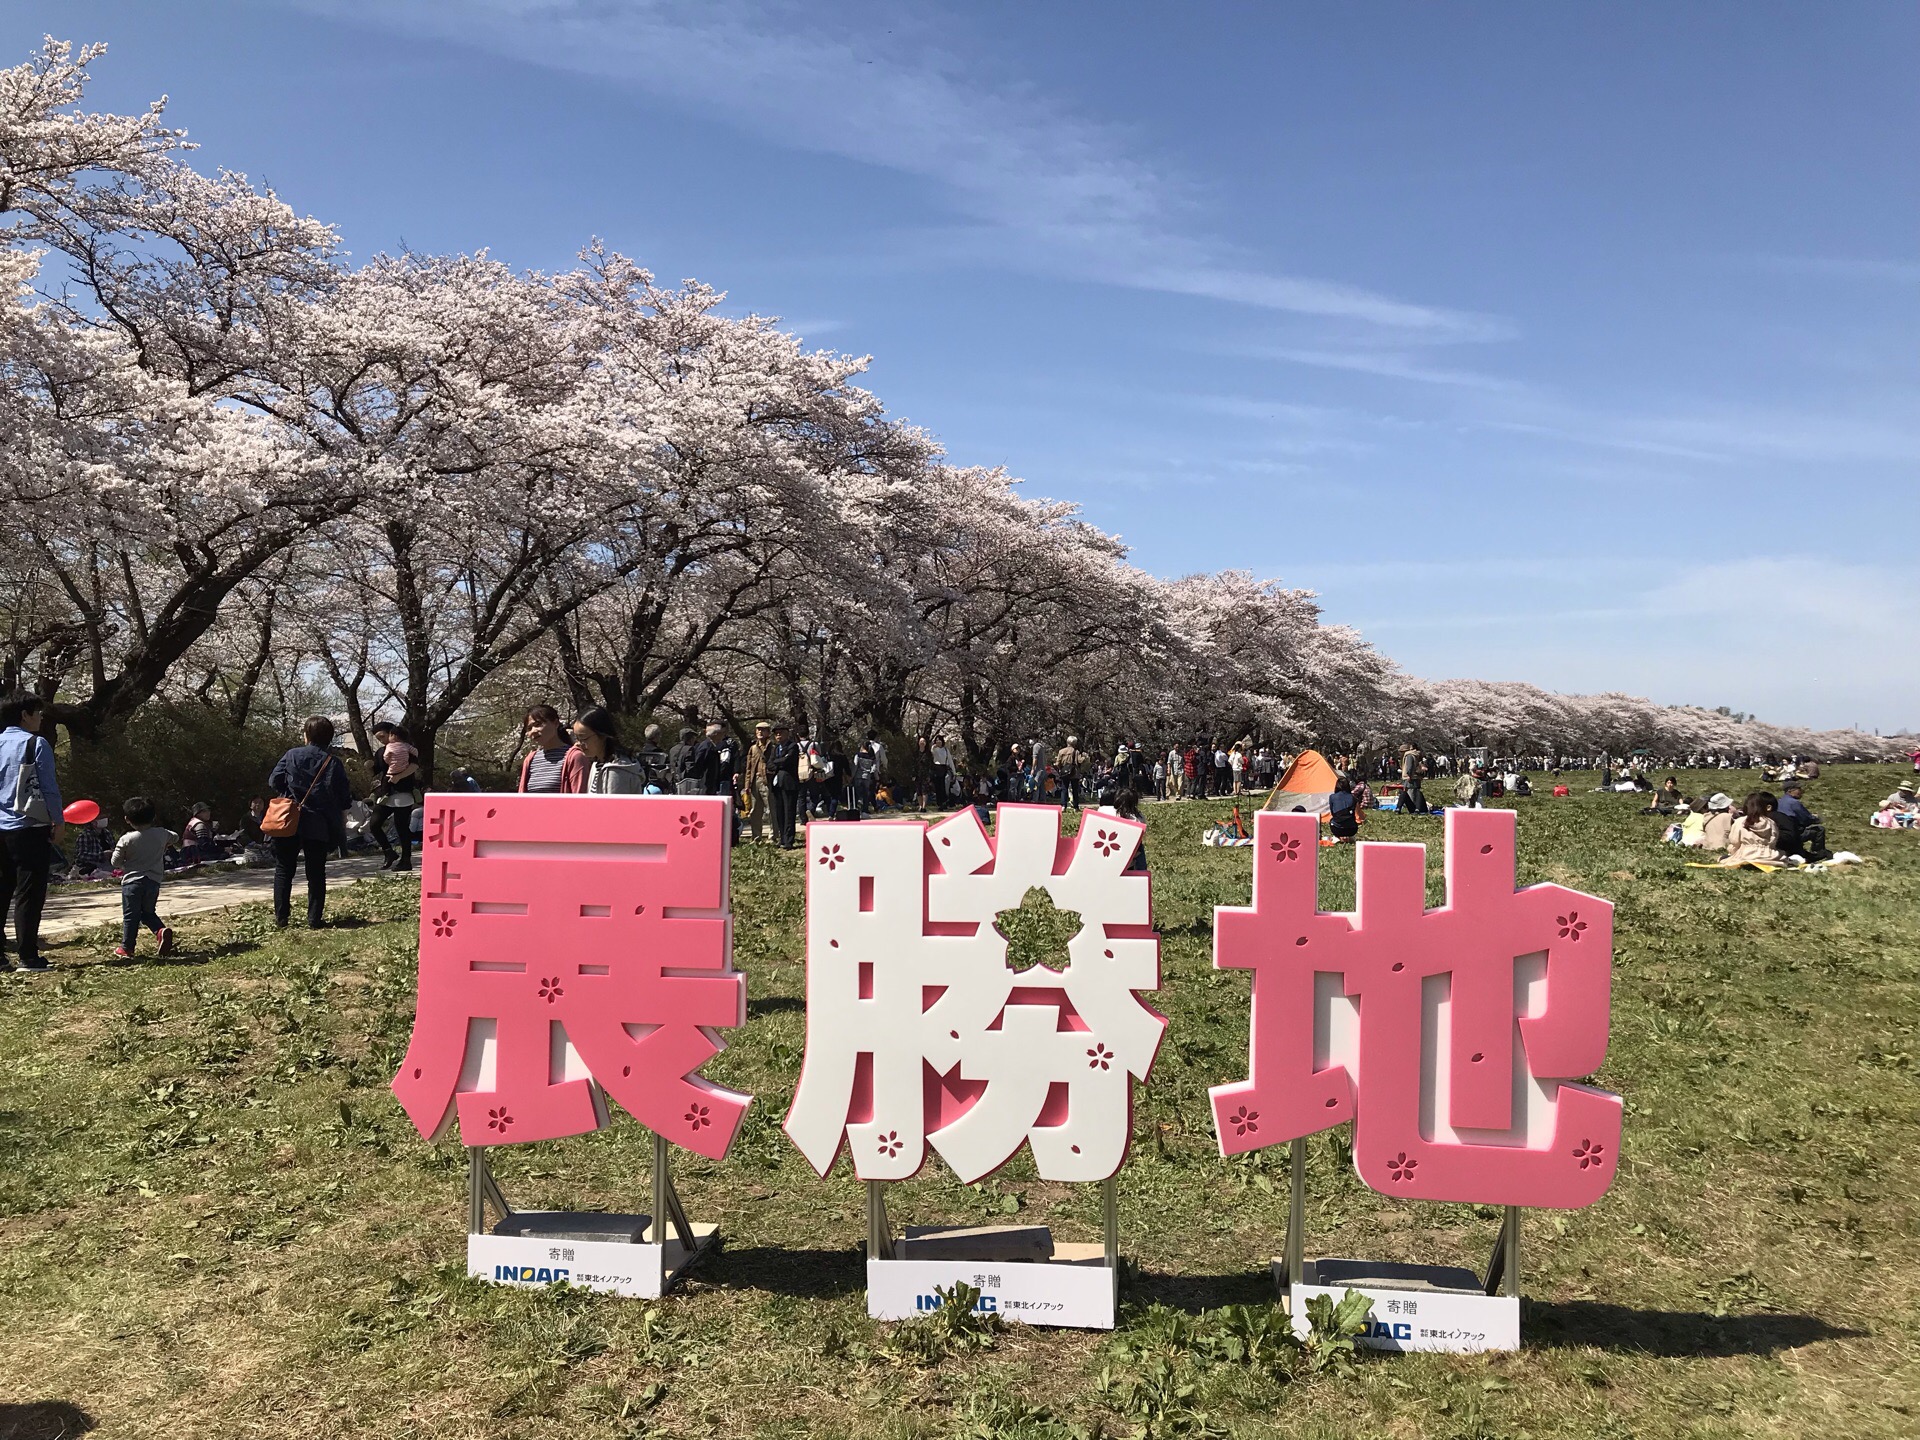 2019.4.21，大晴，看看北上展怒放的樱花。